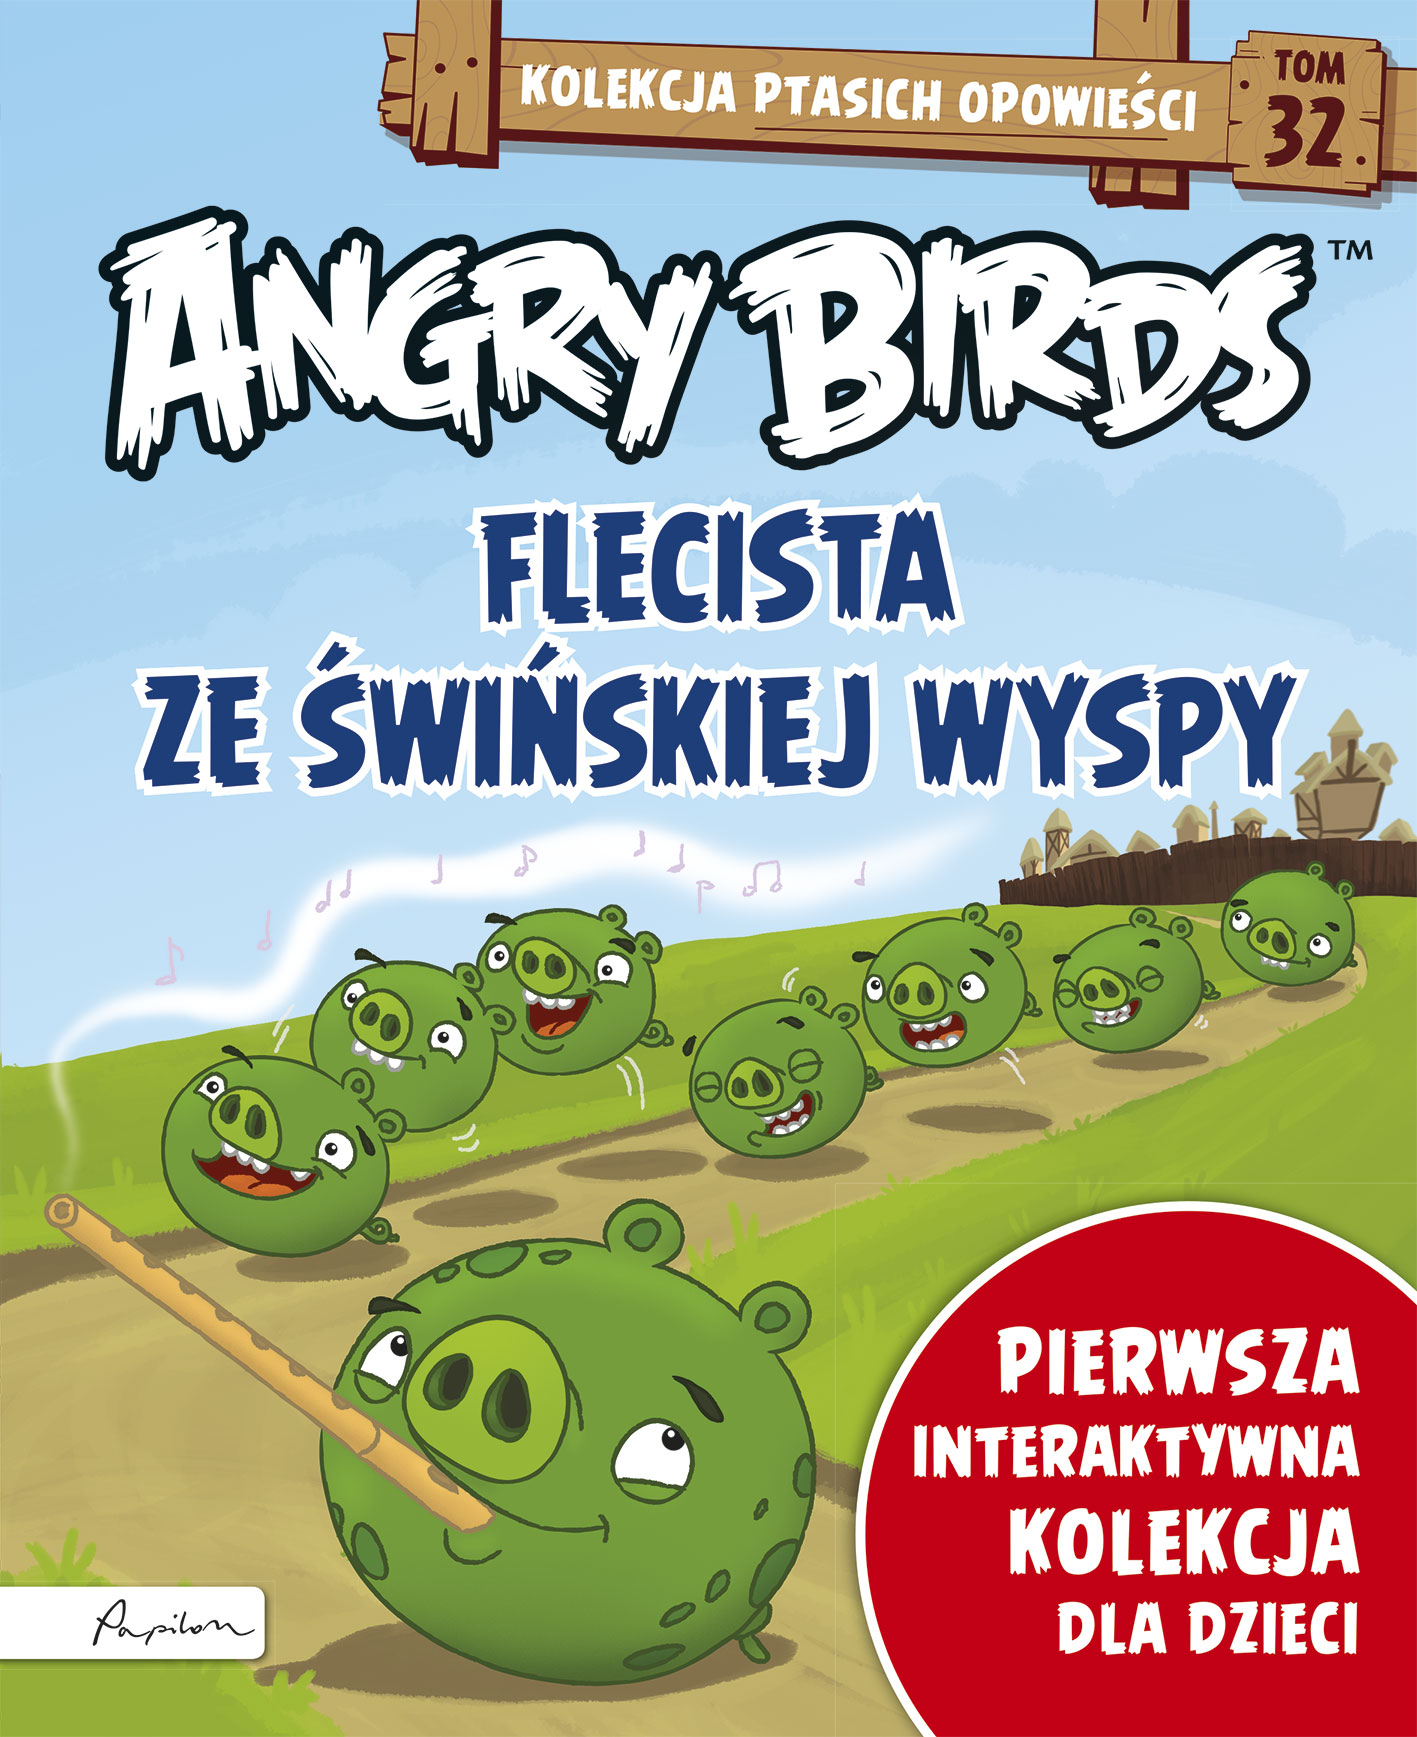 Angry Birds. Kolekcja ptasich opowieści 32. Flecista z Świńskiej Wyspy.